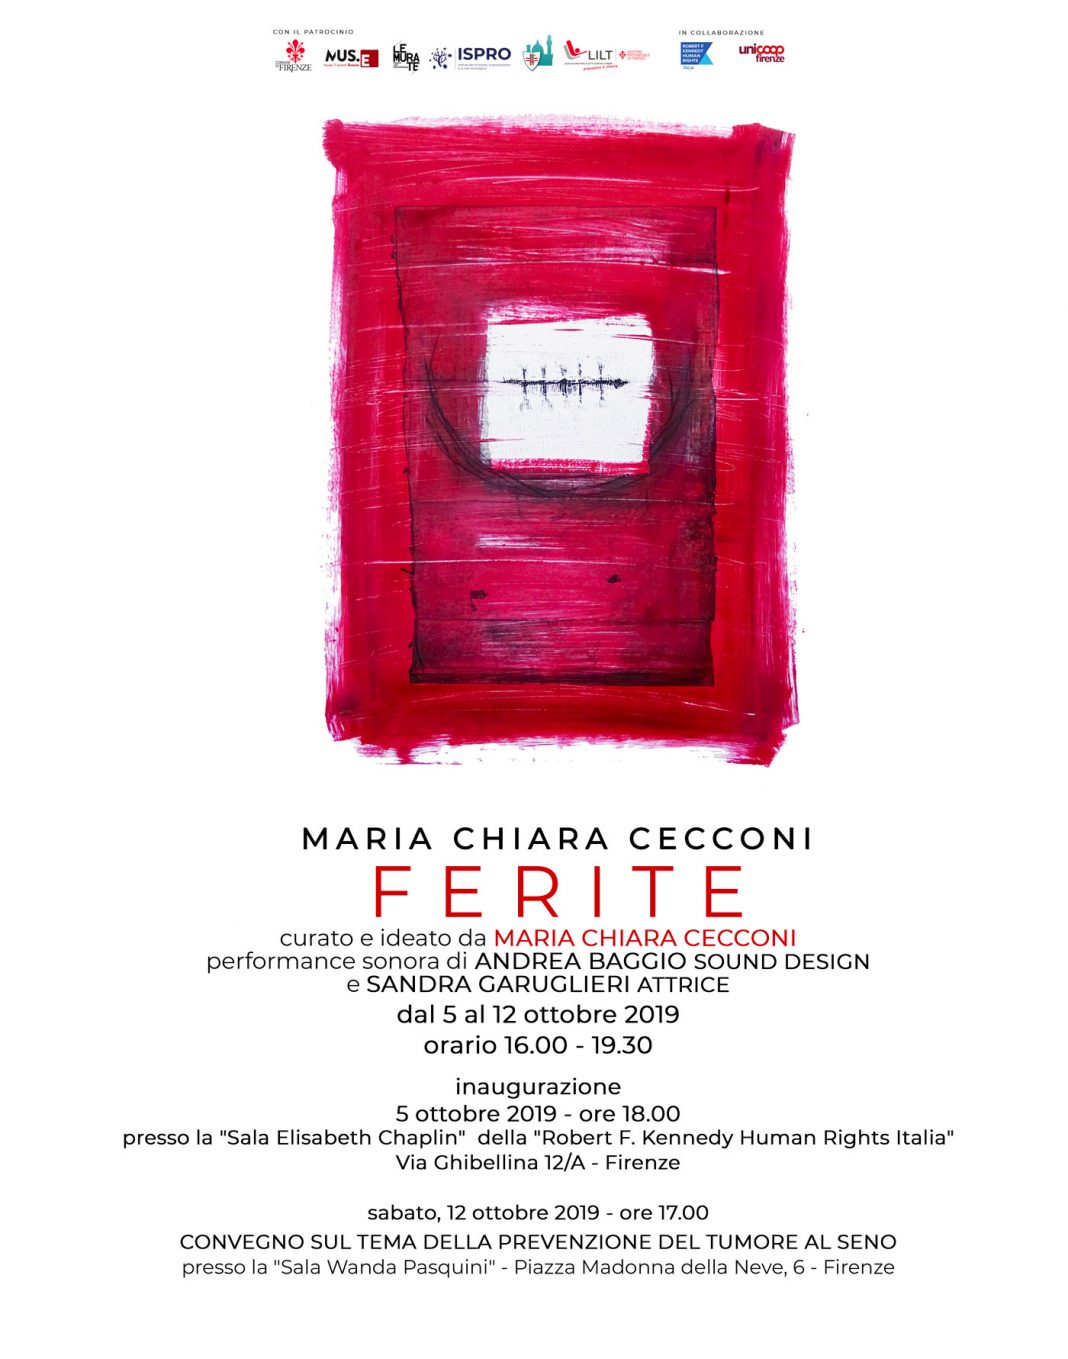 Maria Chiara Cecconi – Feritehttps://www.exibart.com/repository/media/formidable/11/FERITE_Maria_Chiara_Cecconi_Locandina-1068x1359.jpg